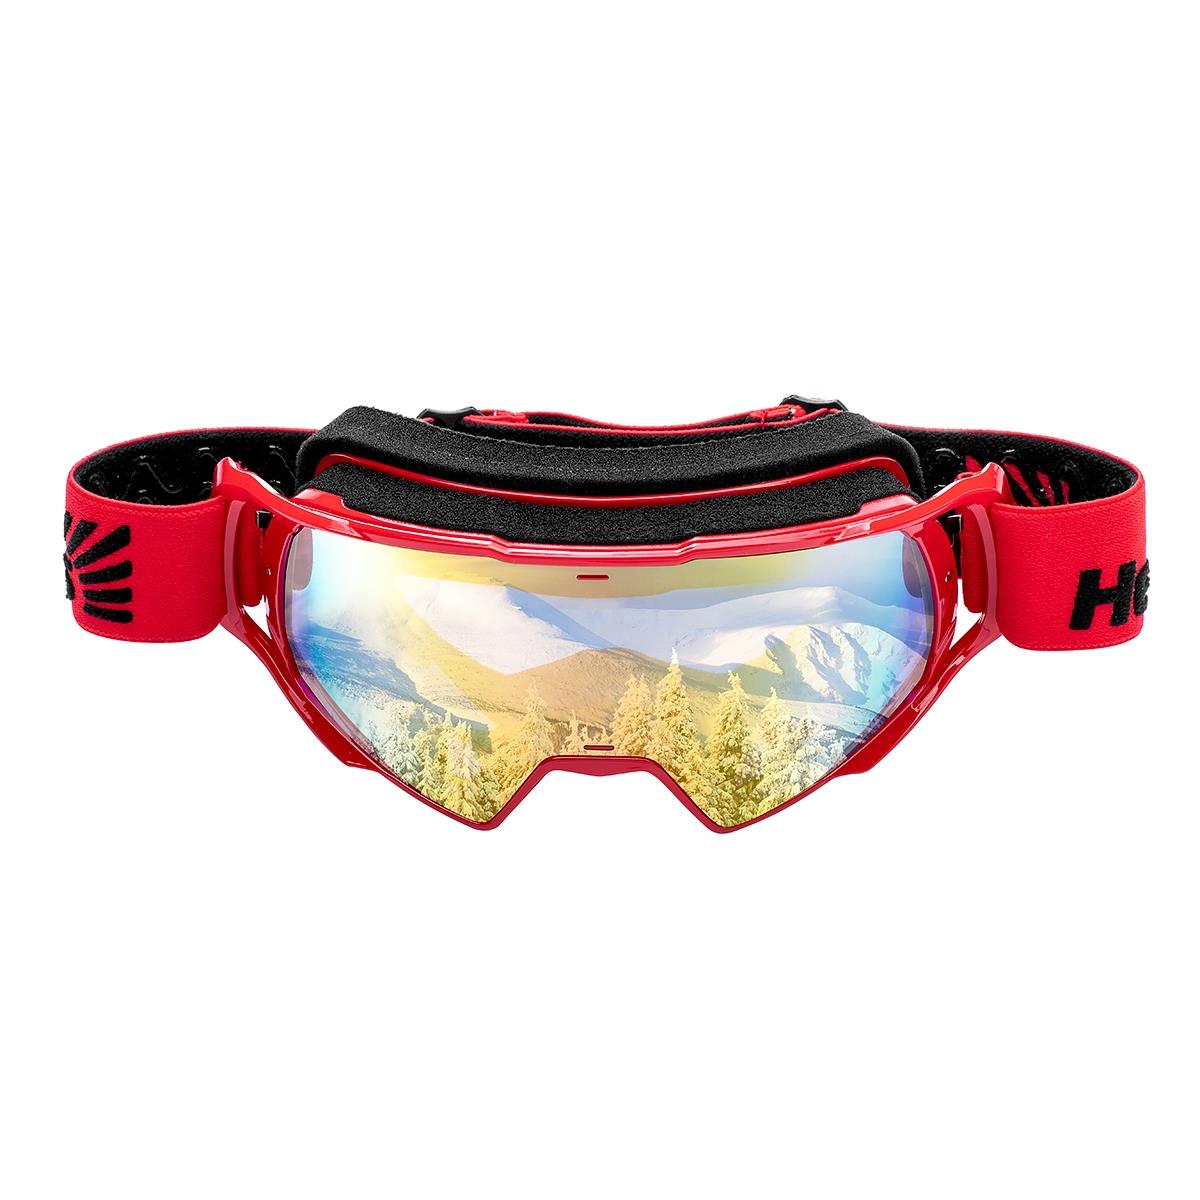 Очки горнолыжные HS-MT-023 Helios очки виртуальной реальности google из картона для смартфонов